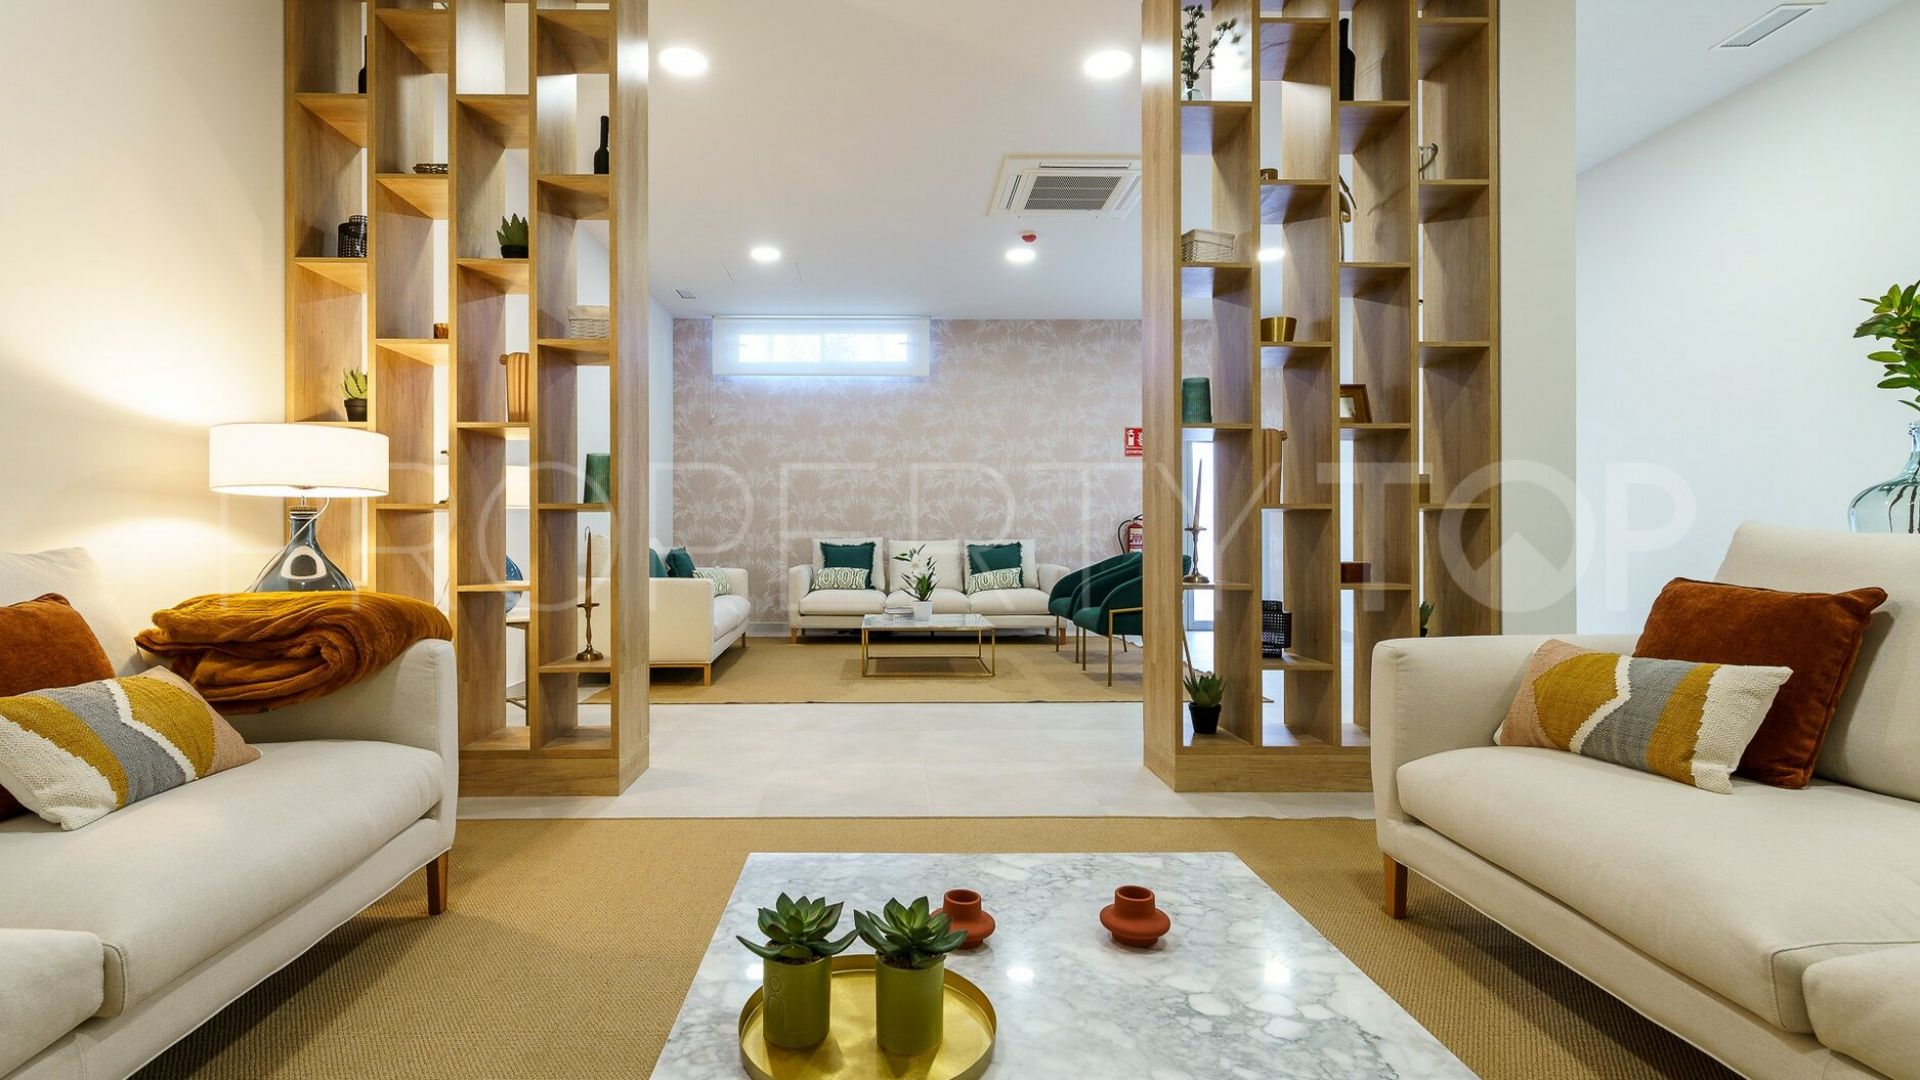 Ground floor apartment for sale in Cala de Mijas with 2 bedrooms